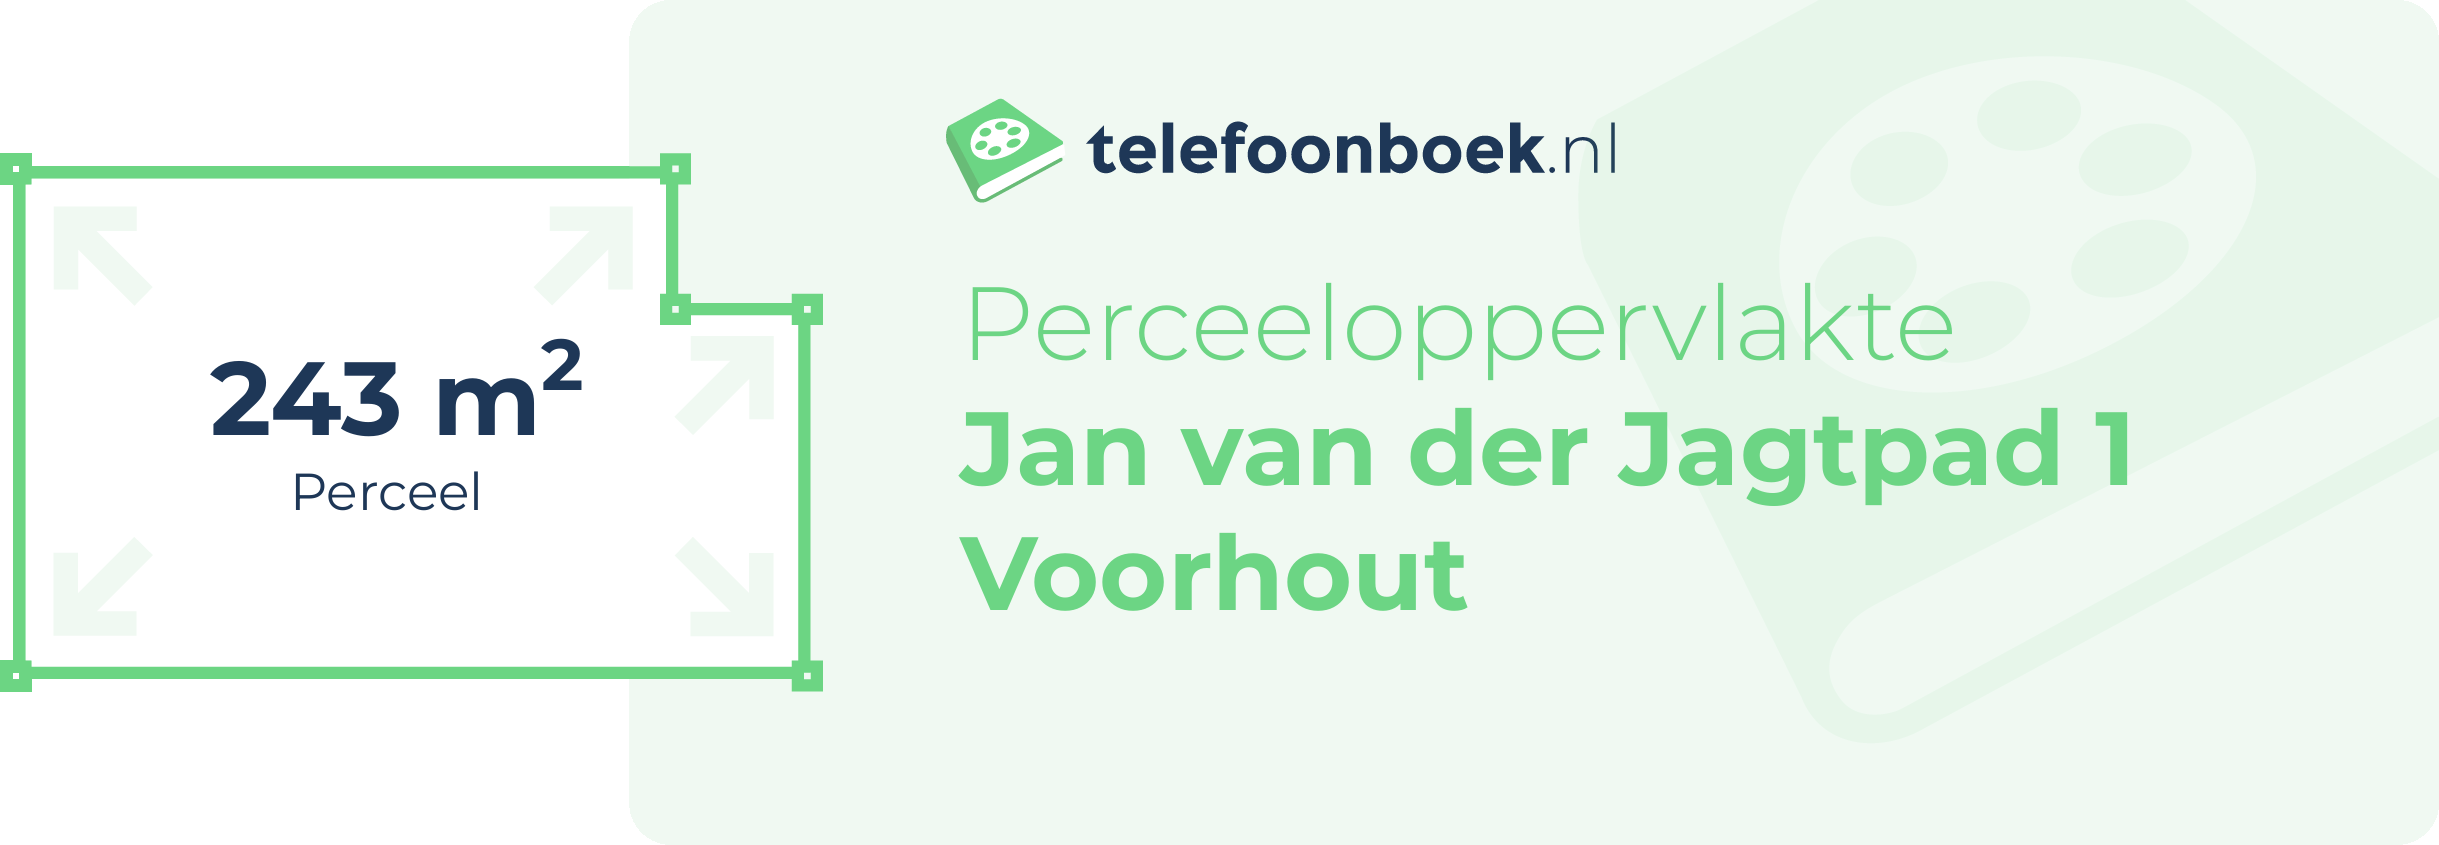 Perceeloppervlakte Jan Van Der Jagtpad 1 Voorhout